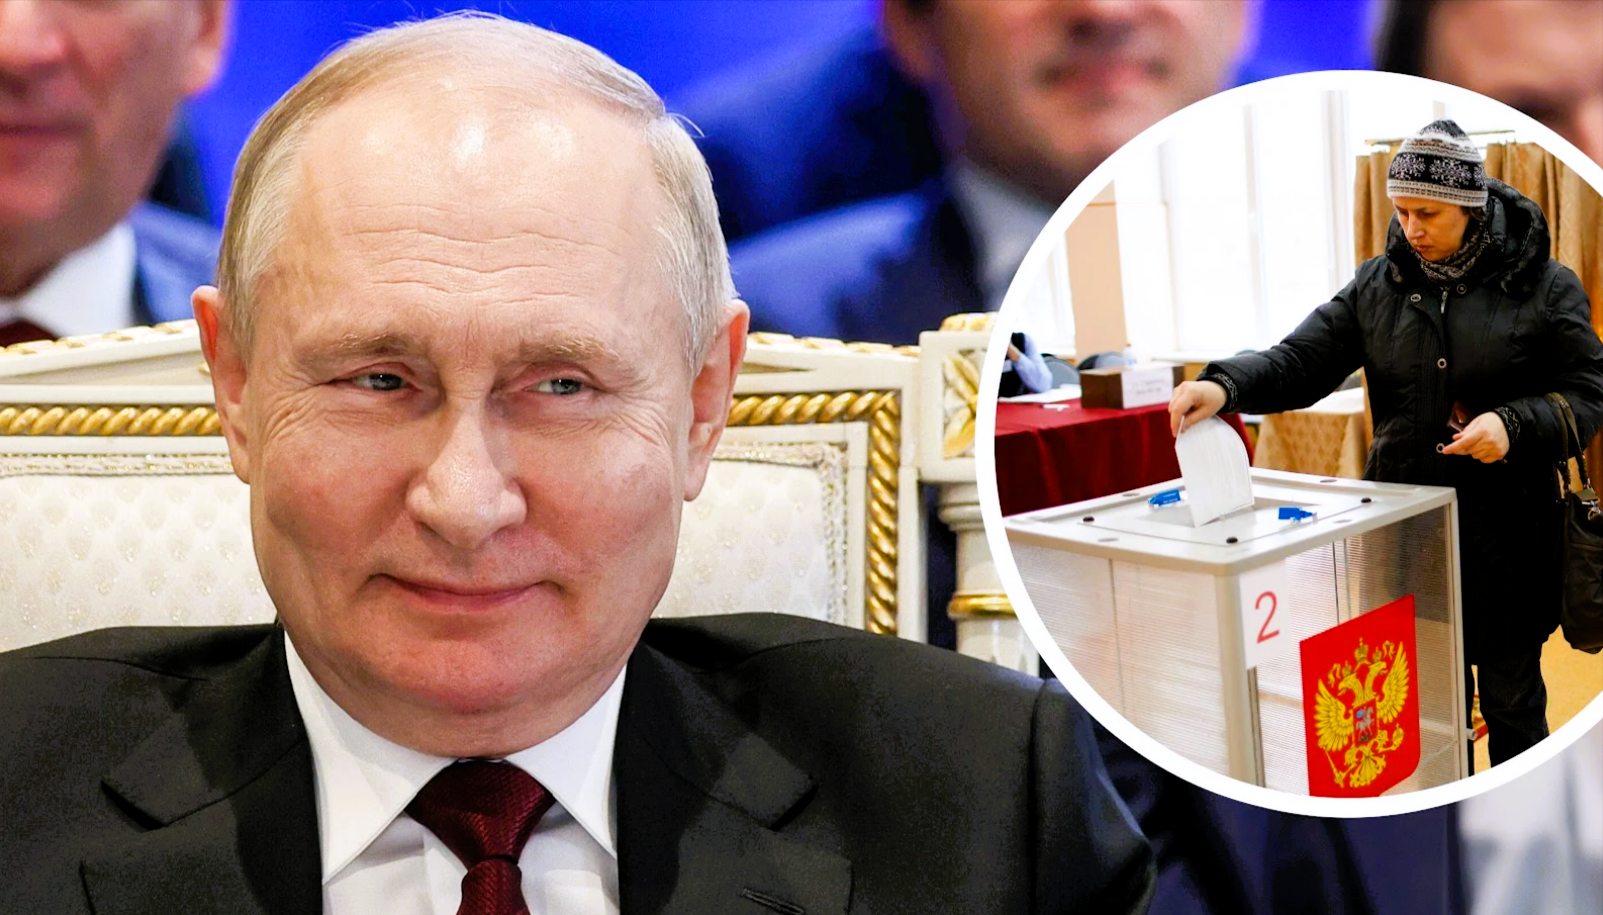 Eilmeldung! Putin gewinnt die Wahl in Russland - hier alle Reaktionen!